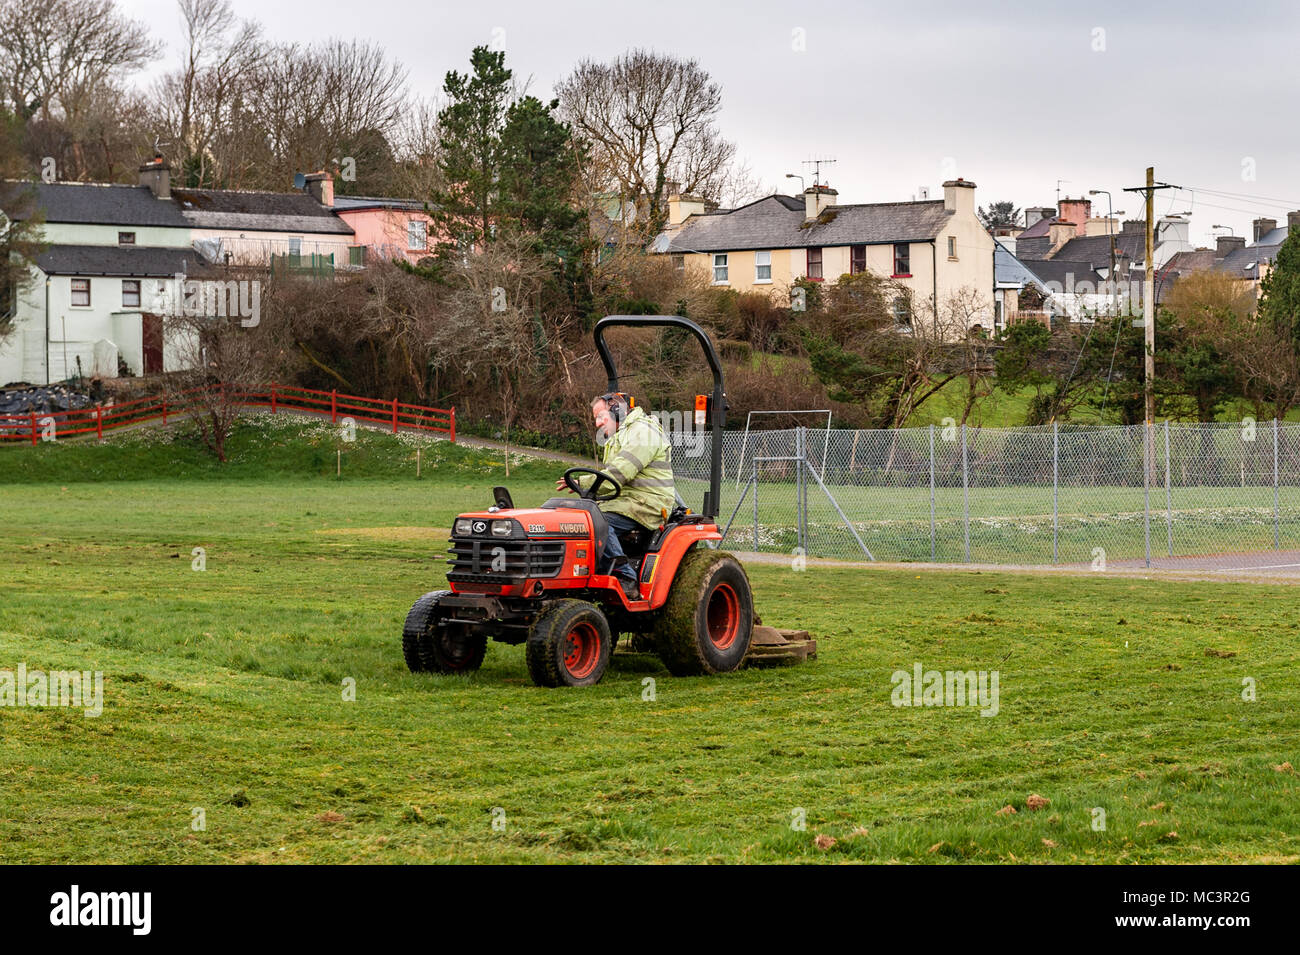 Le Conseil du comté de Cork workman couper l'herbe sur une tondeuse autoportée Kubota à Ballydehob, comté de Cork, Irlande avec copie espace. Banque D'Images